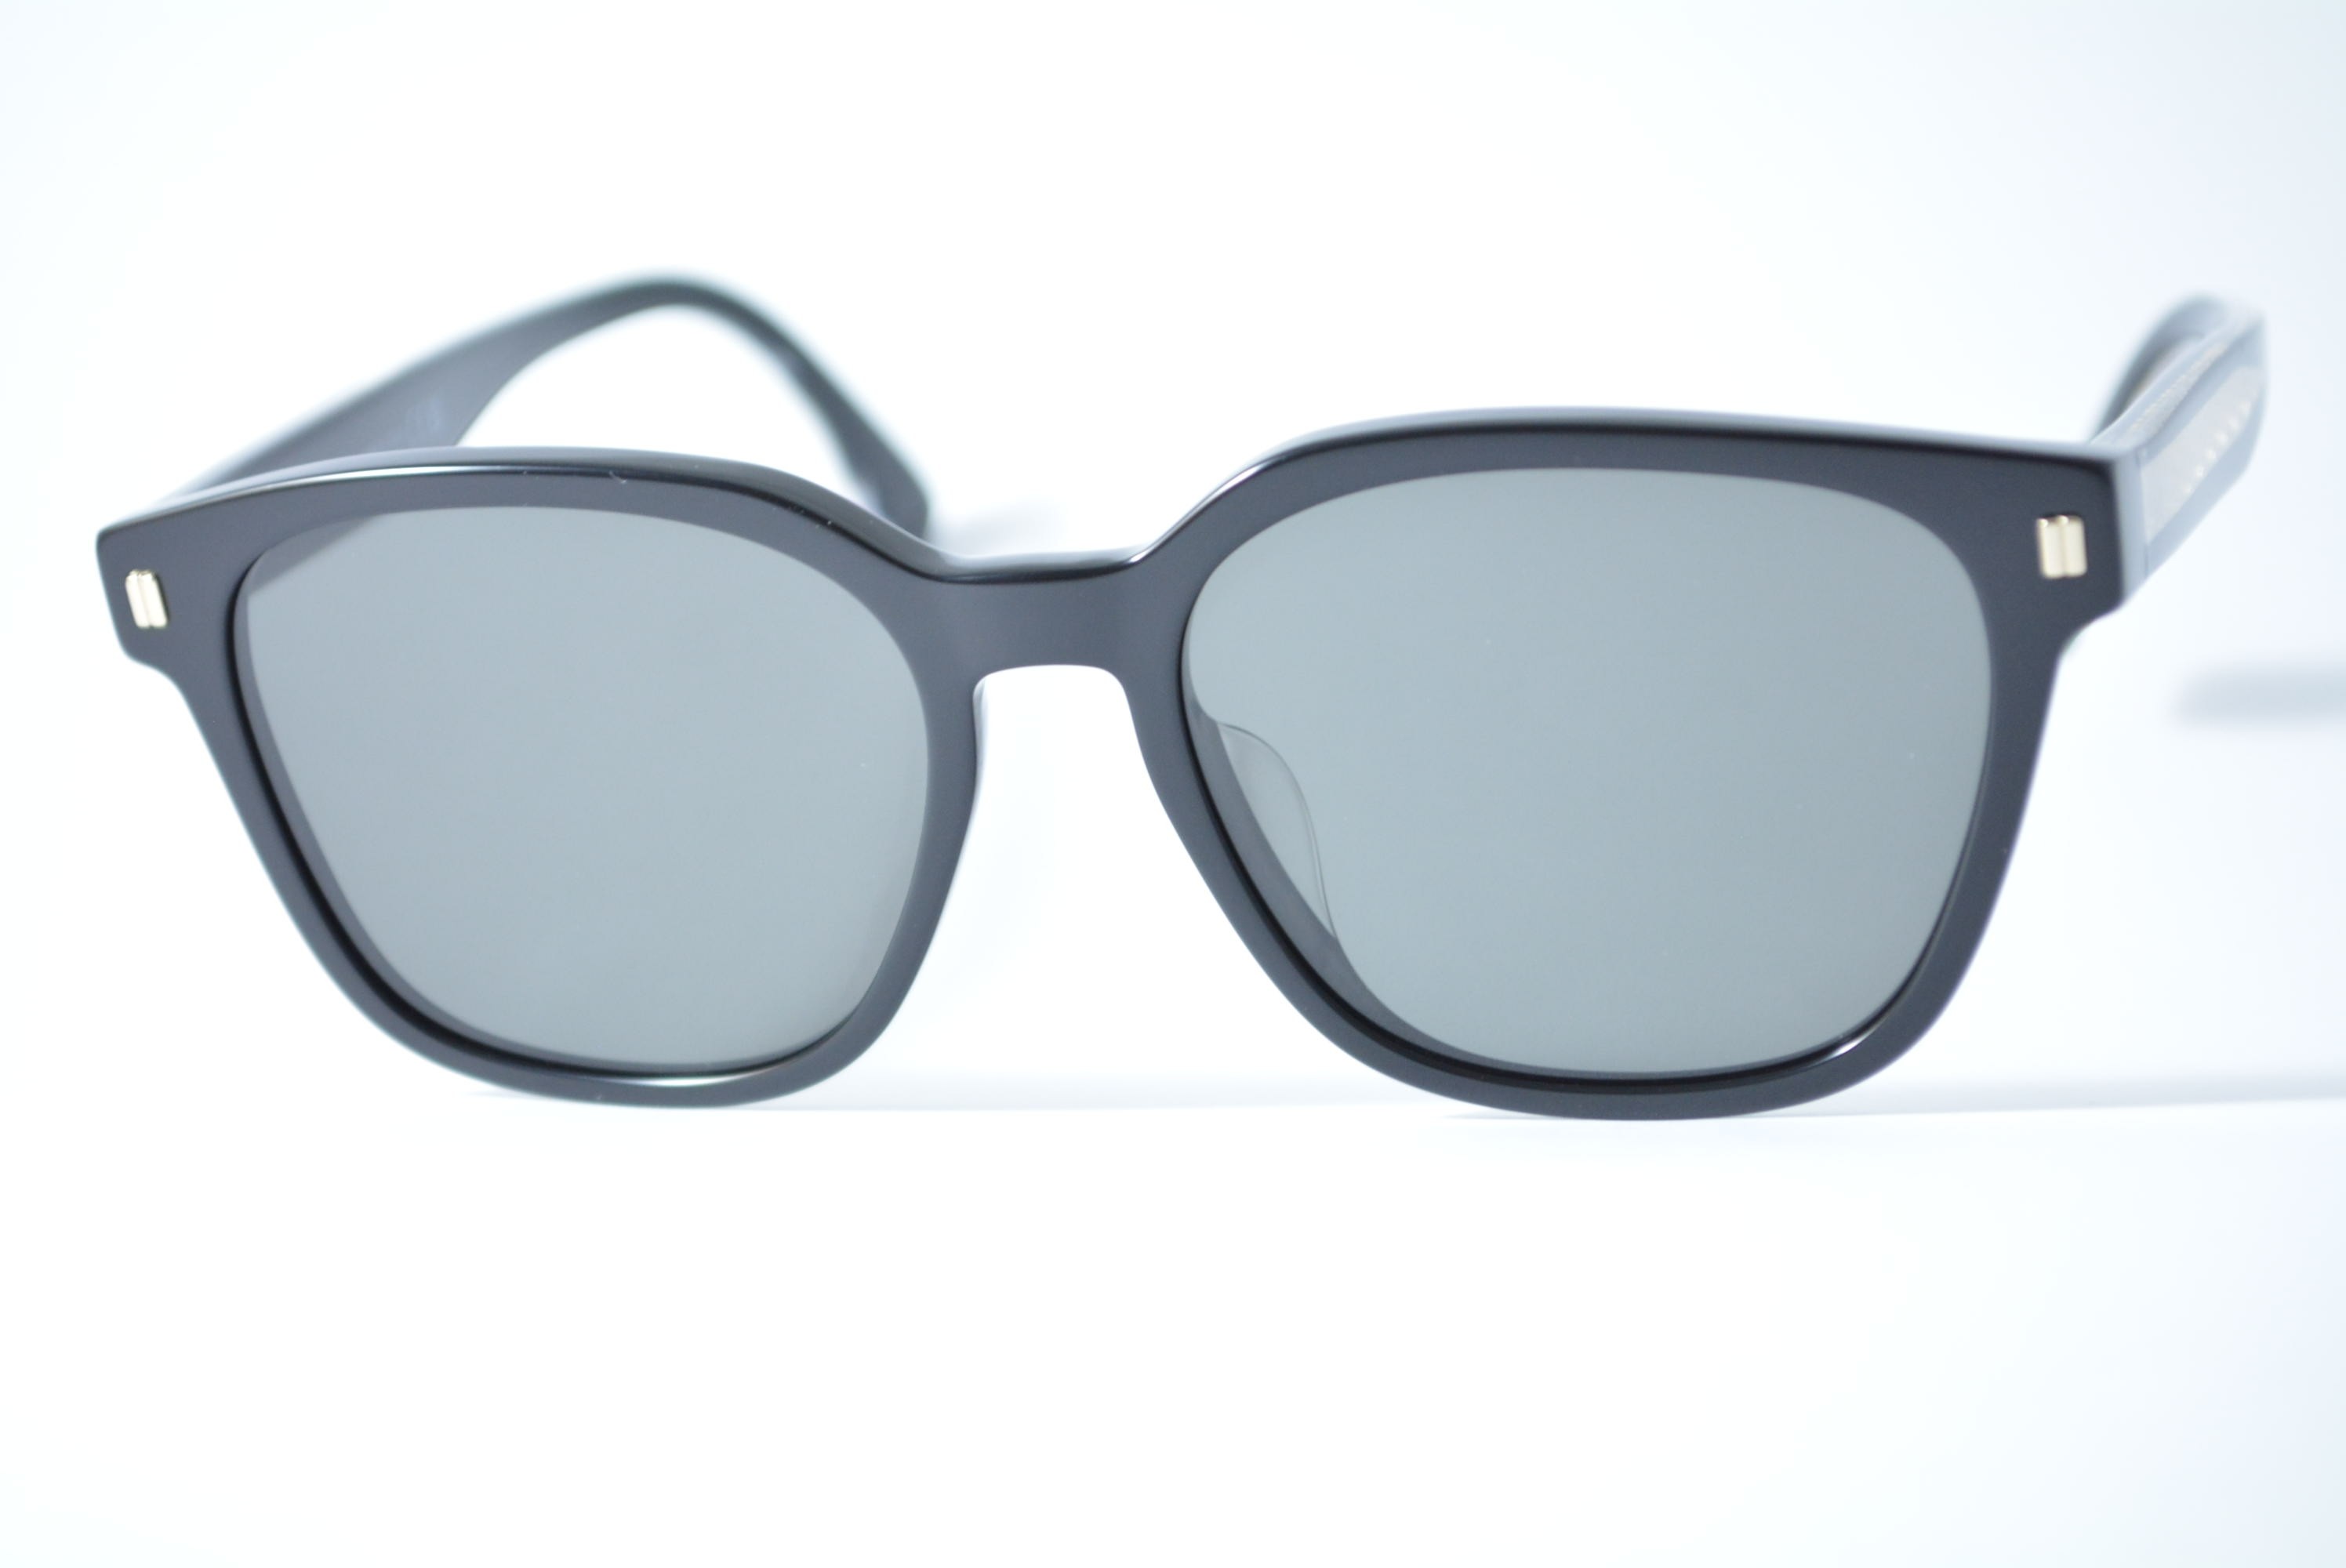 óculos de sol Fendi mod FE40001u 01a